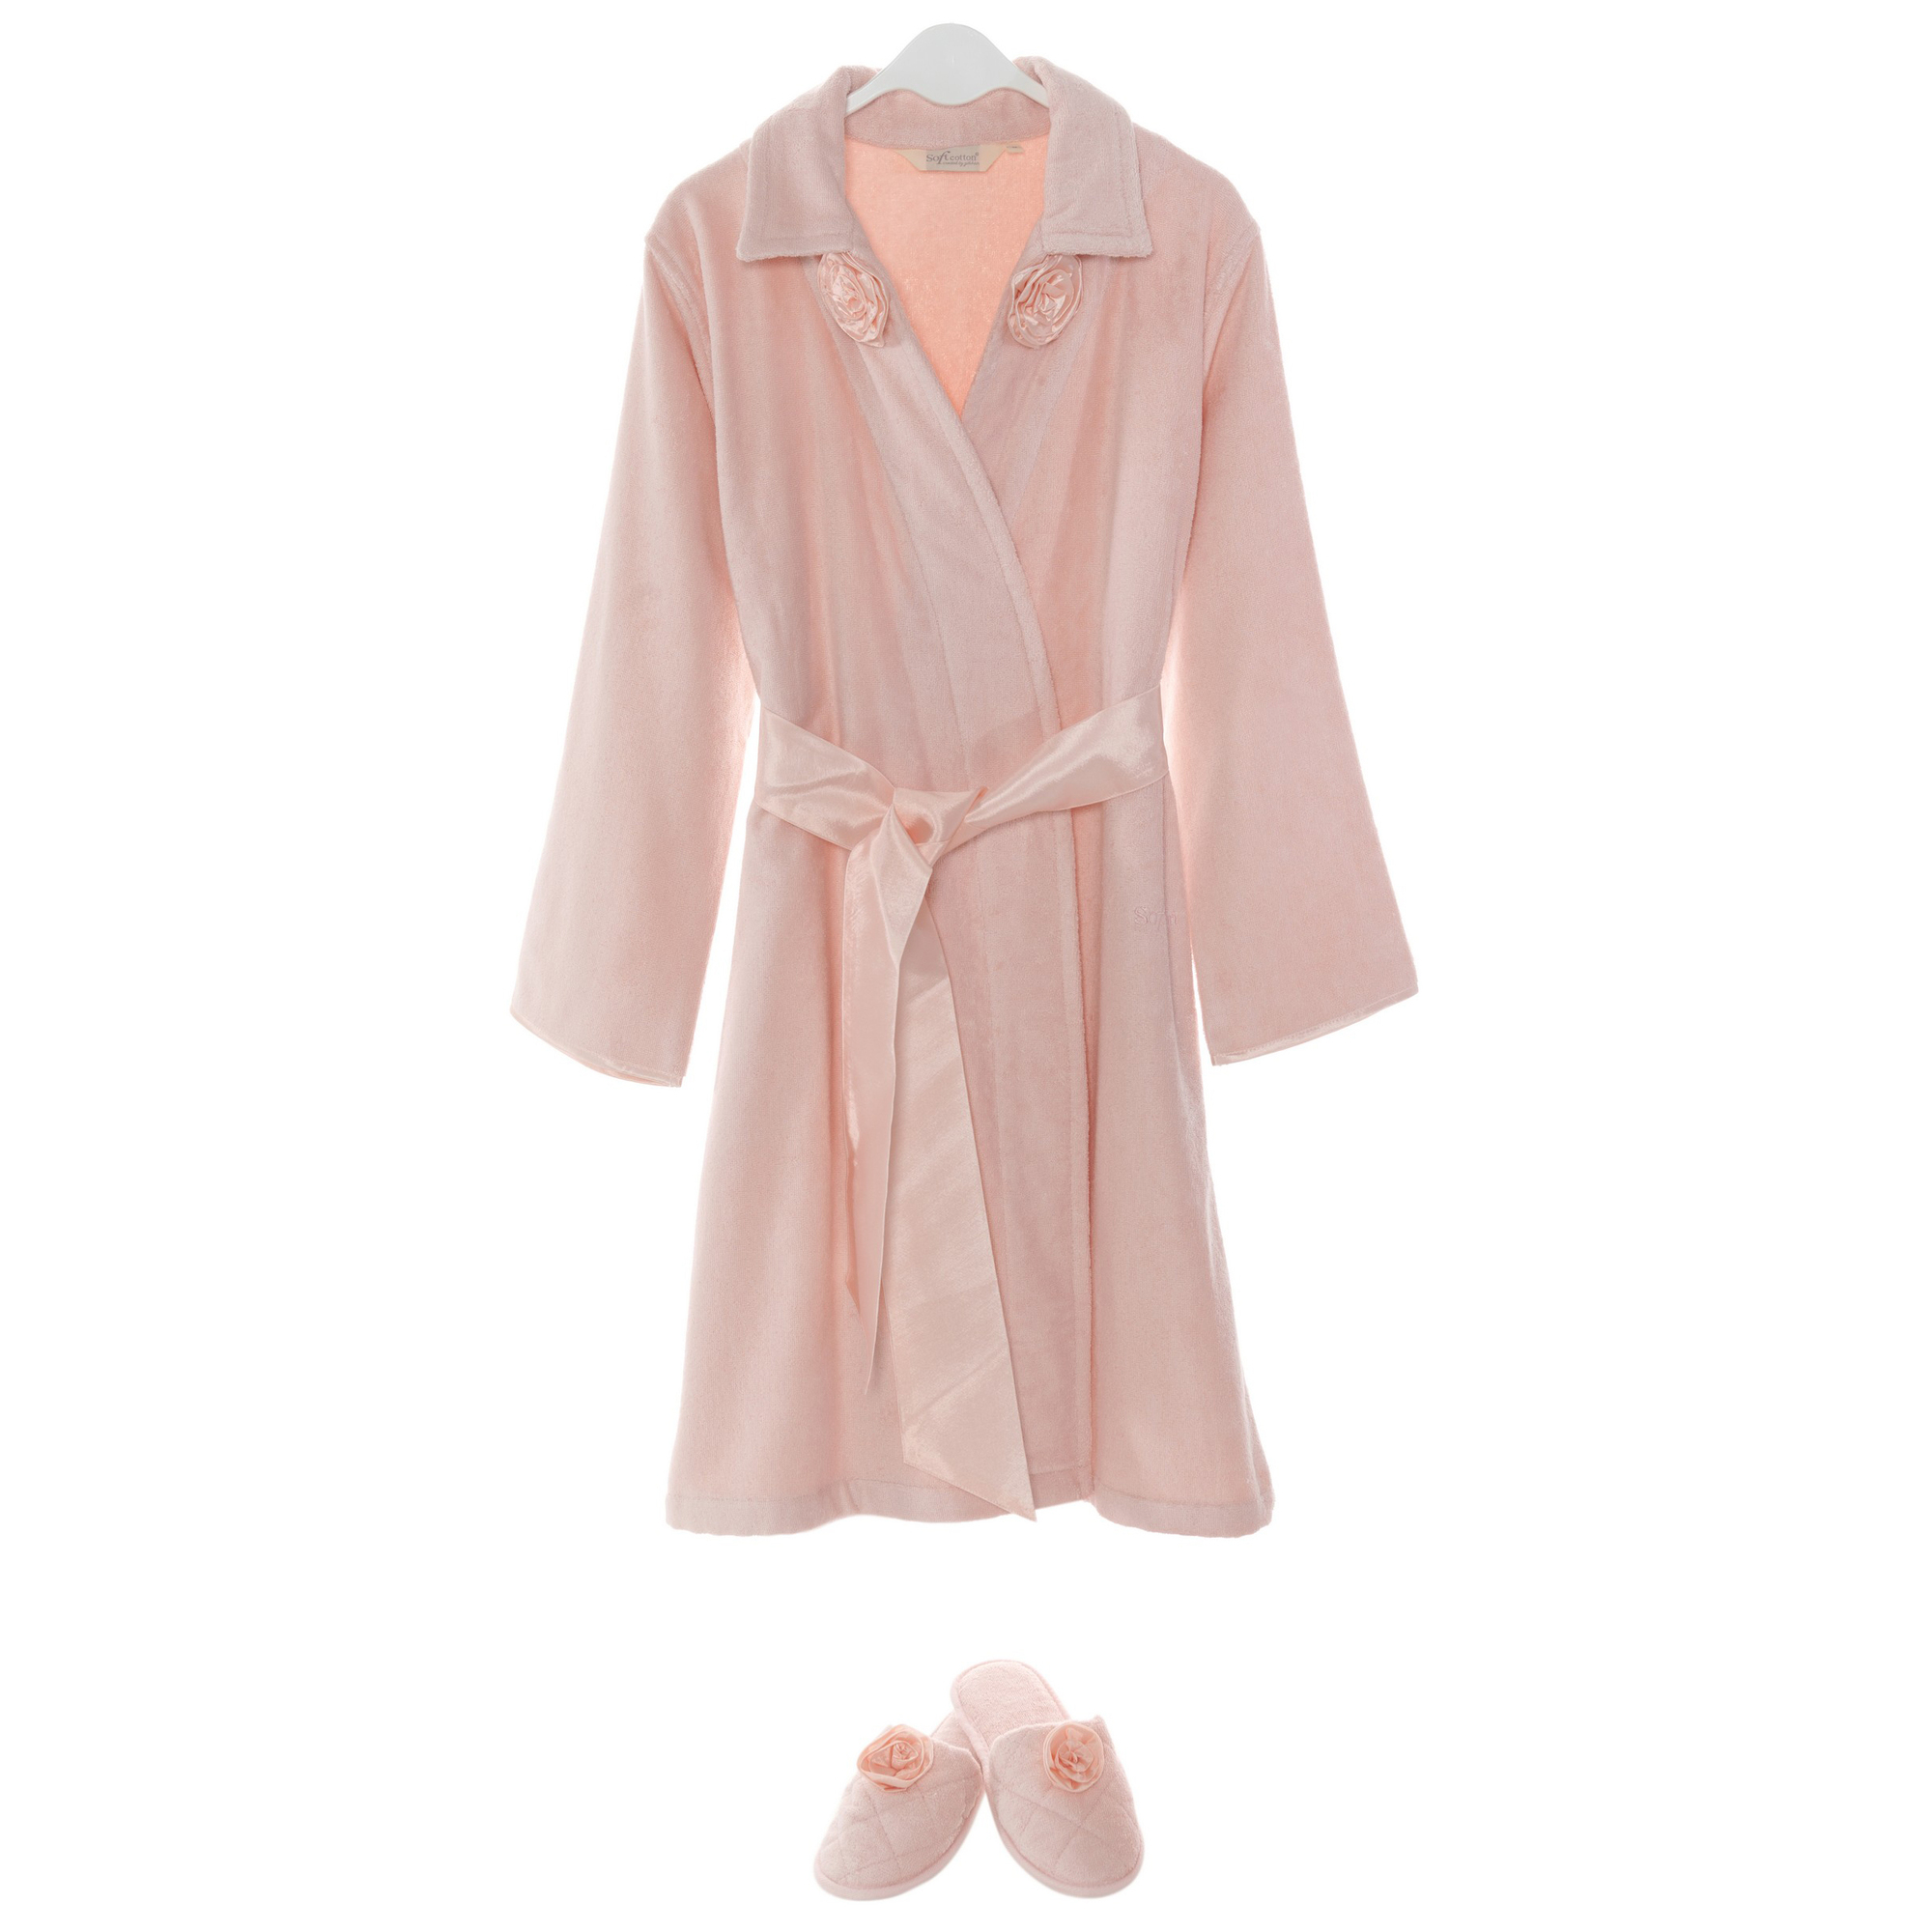 Банный комплект с халатом Trish цвет: розовый (L)